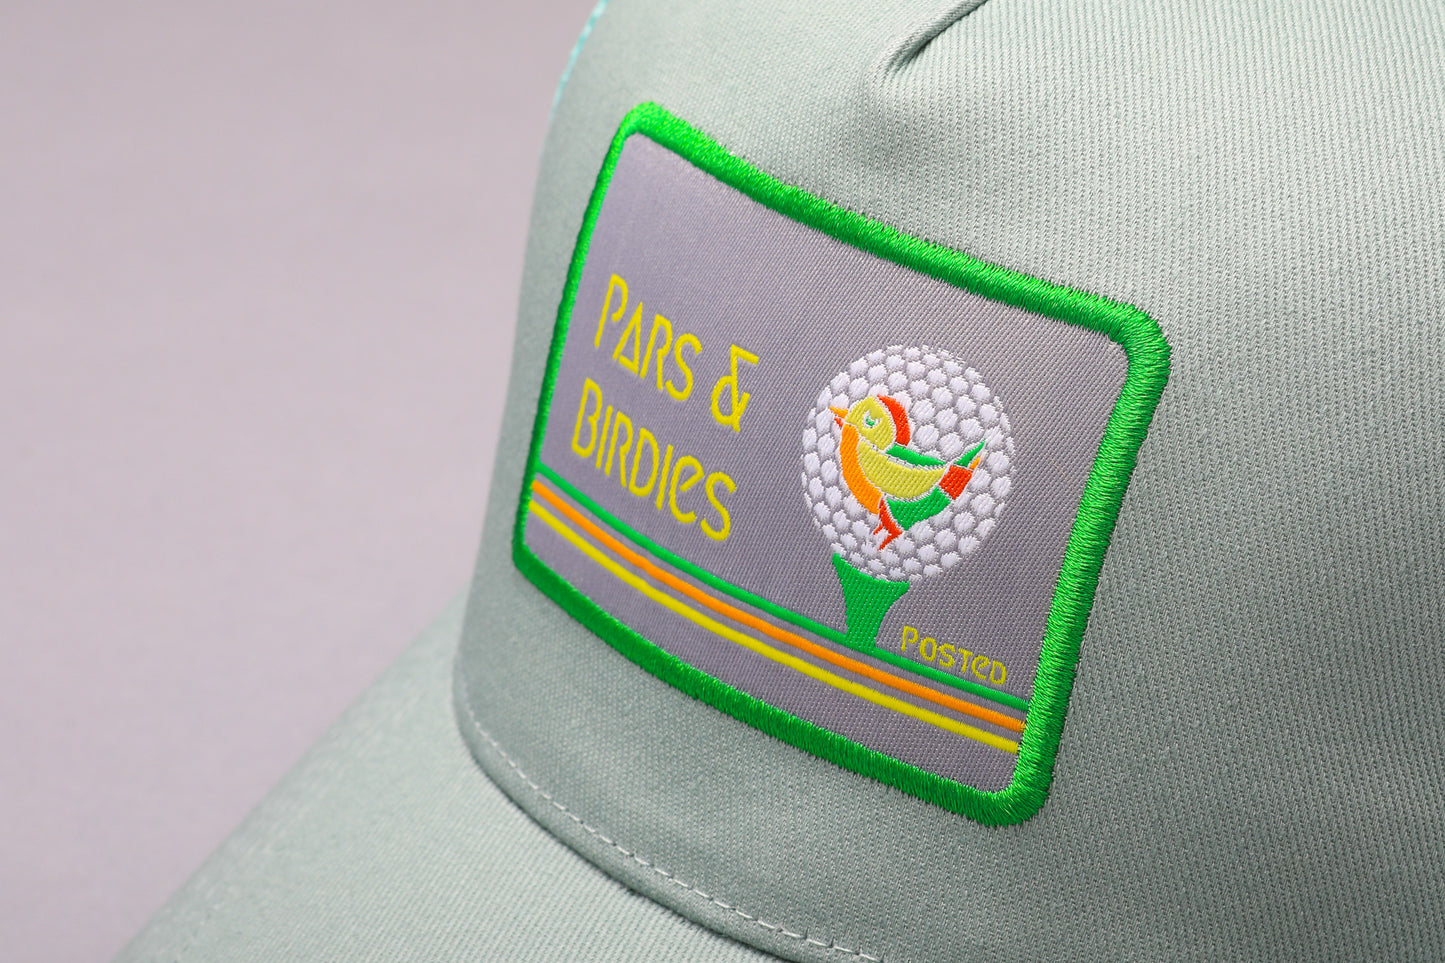 Golf hat: Pars & Birdies